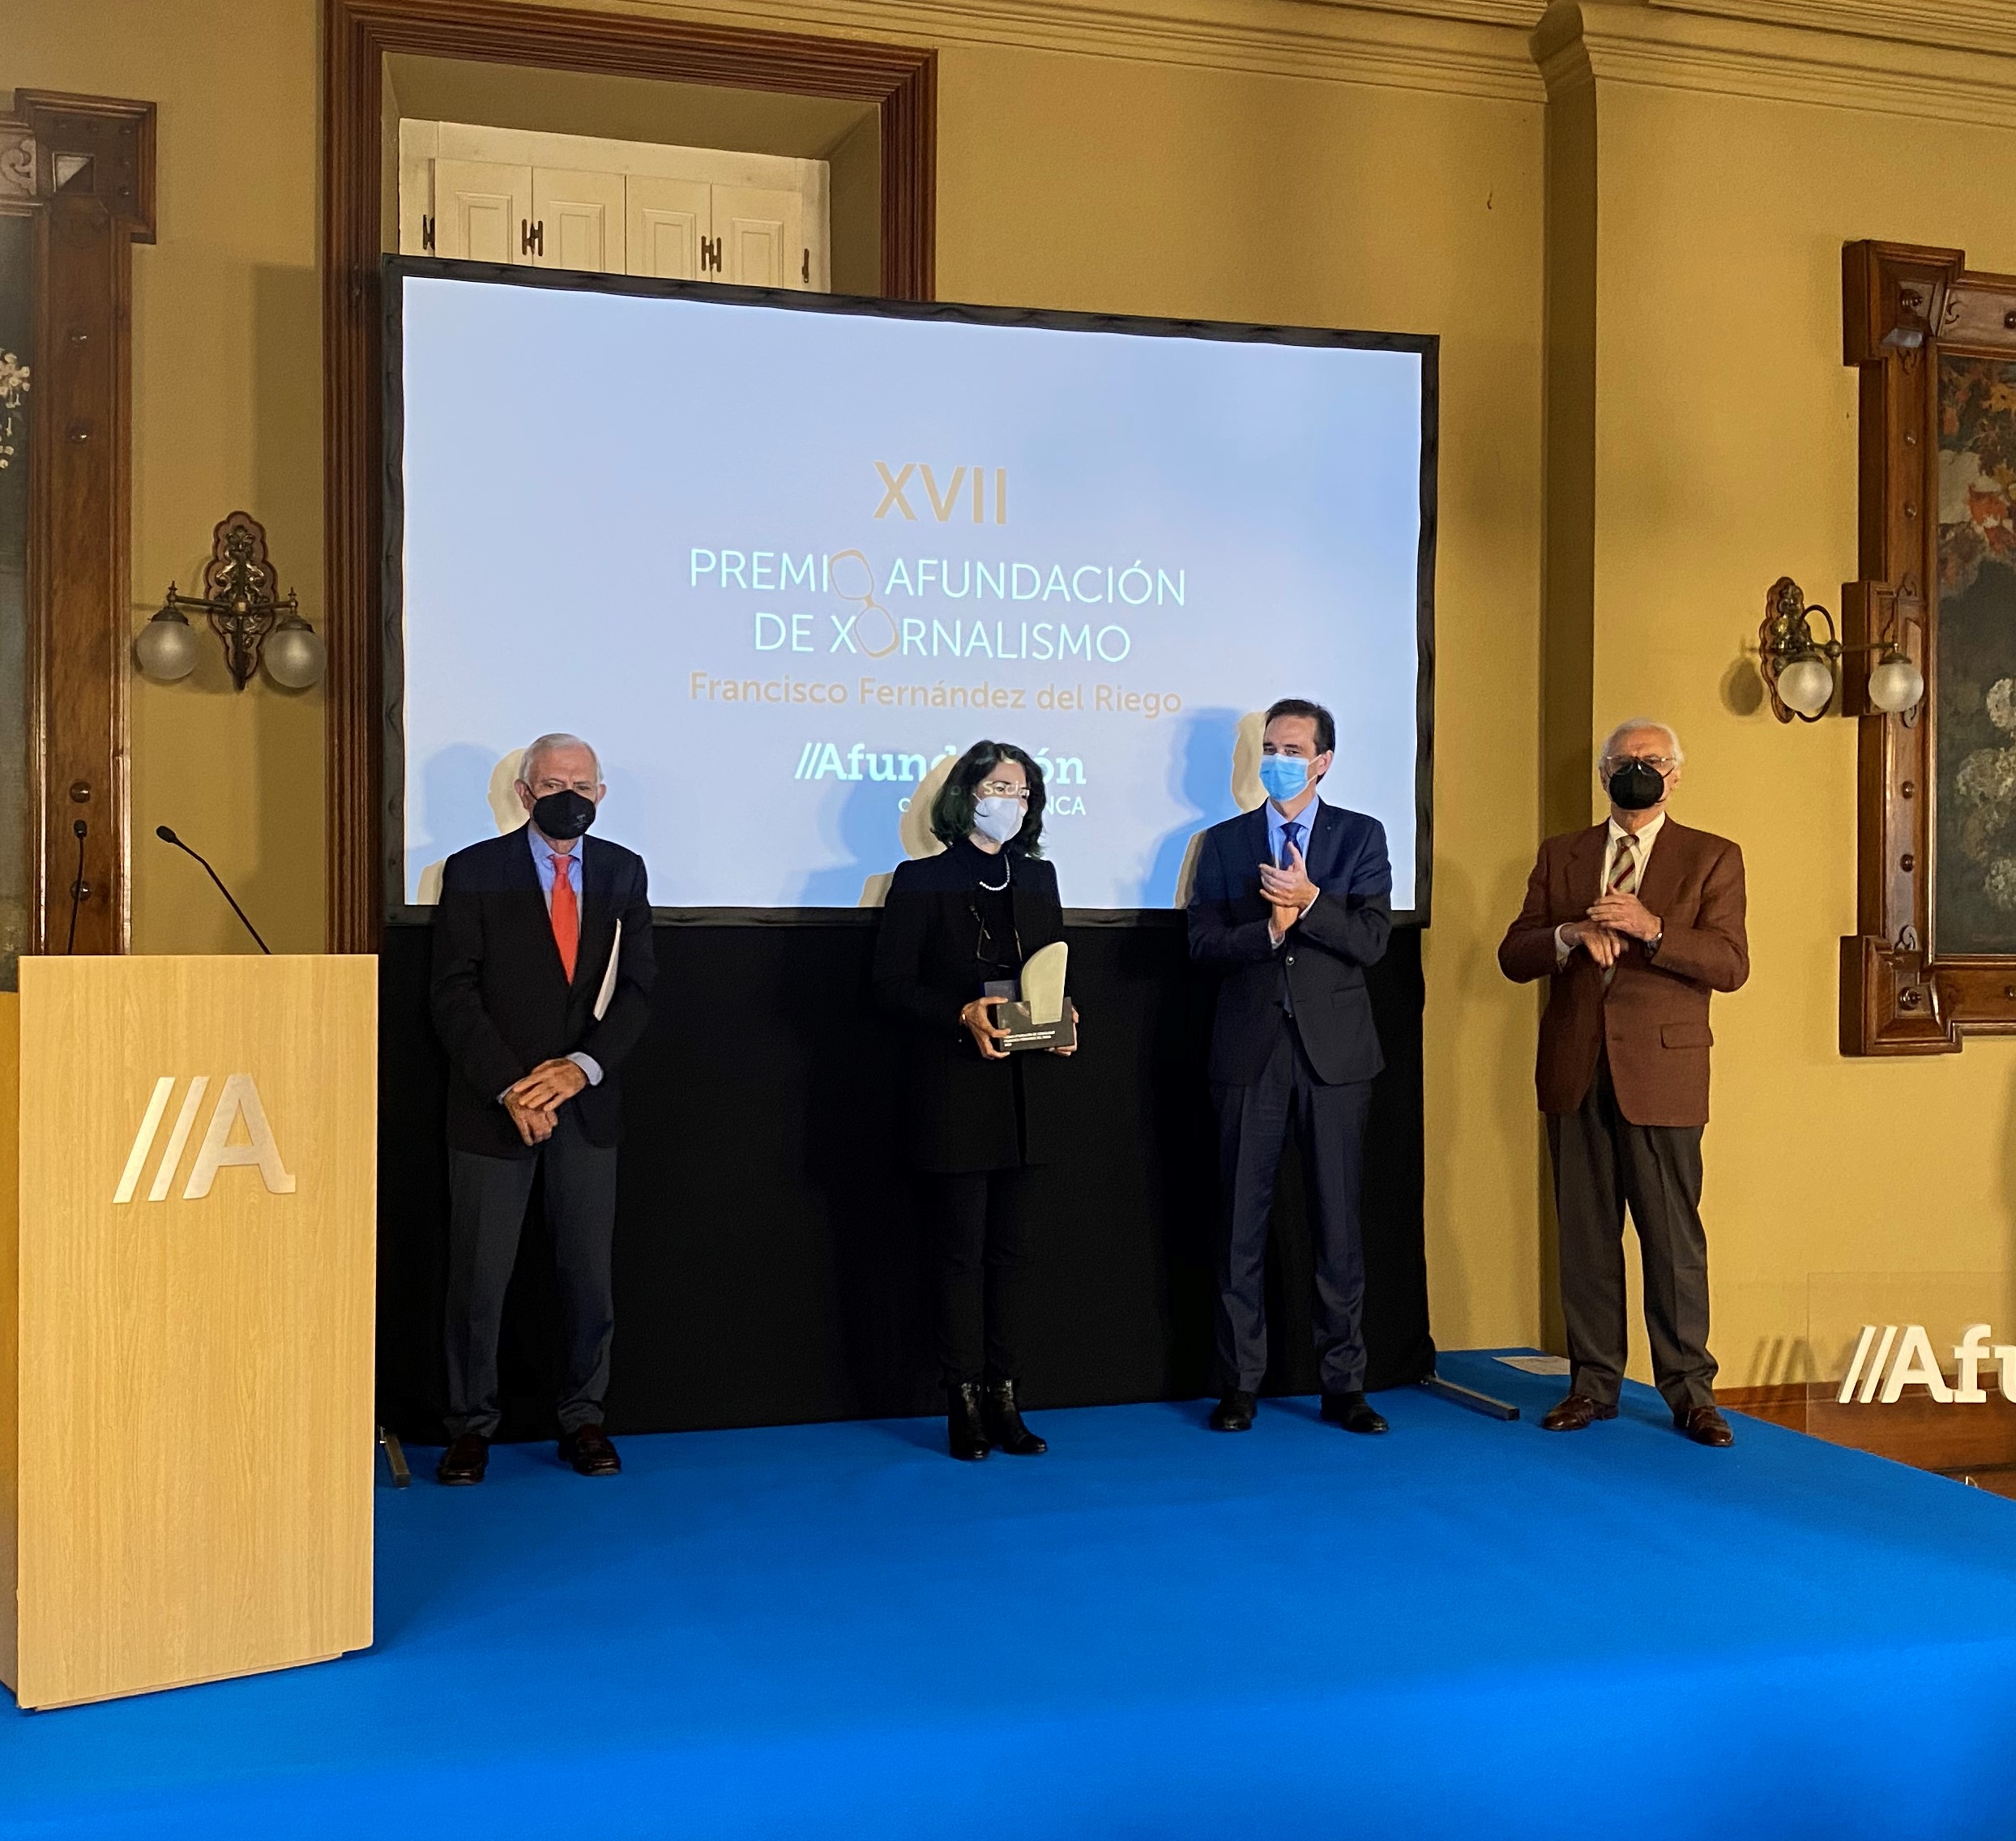 Cristina Pato recibe el XVII Premio Afundación de Xornalismo Fernández del Riego